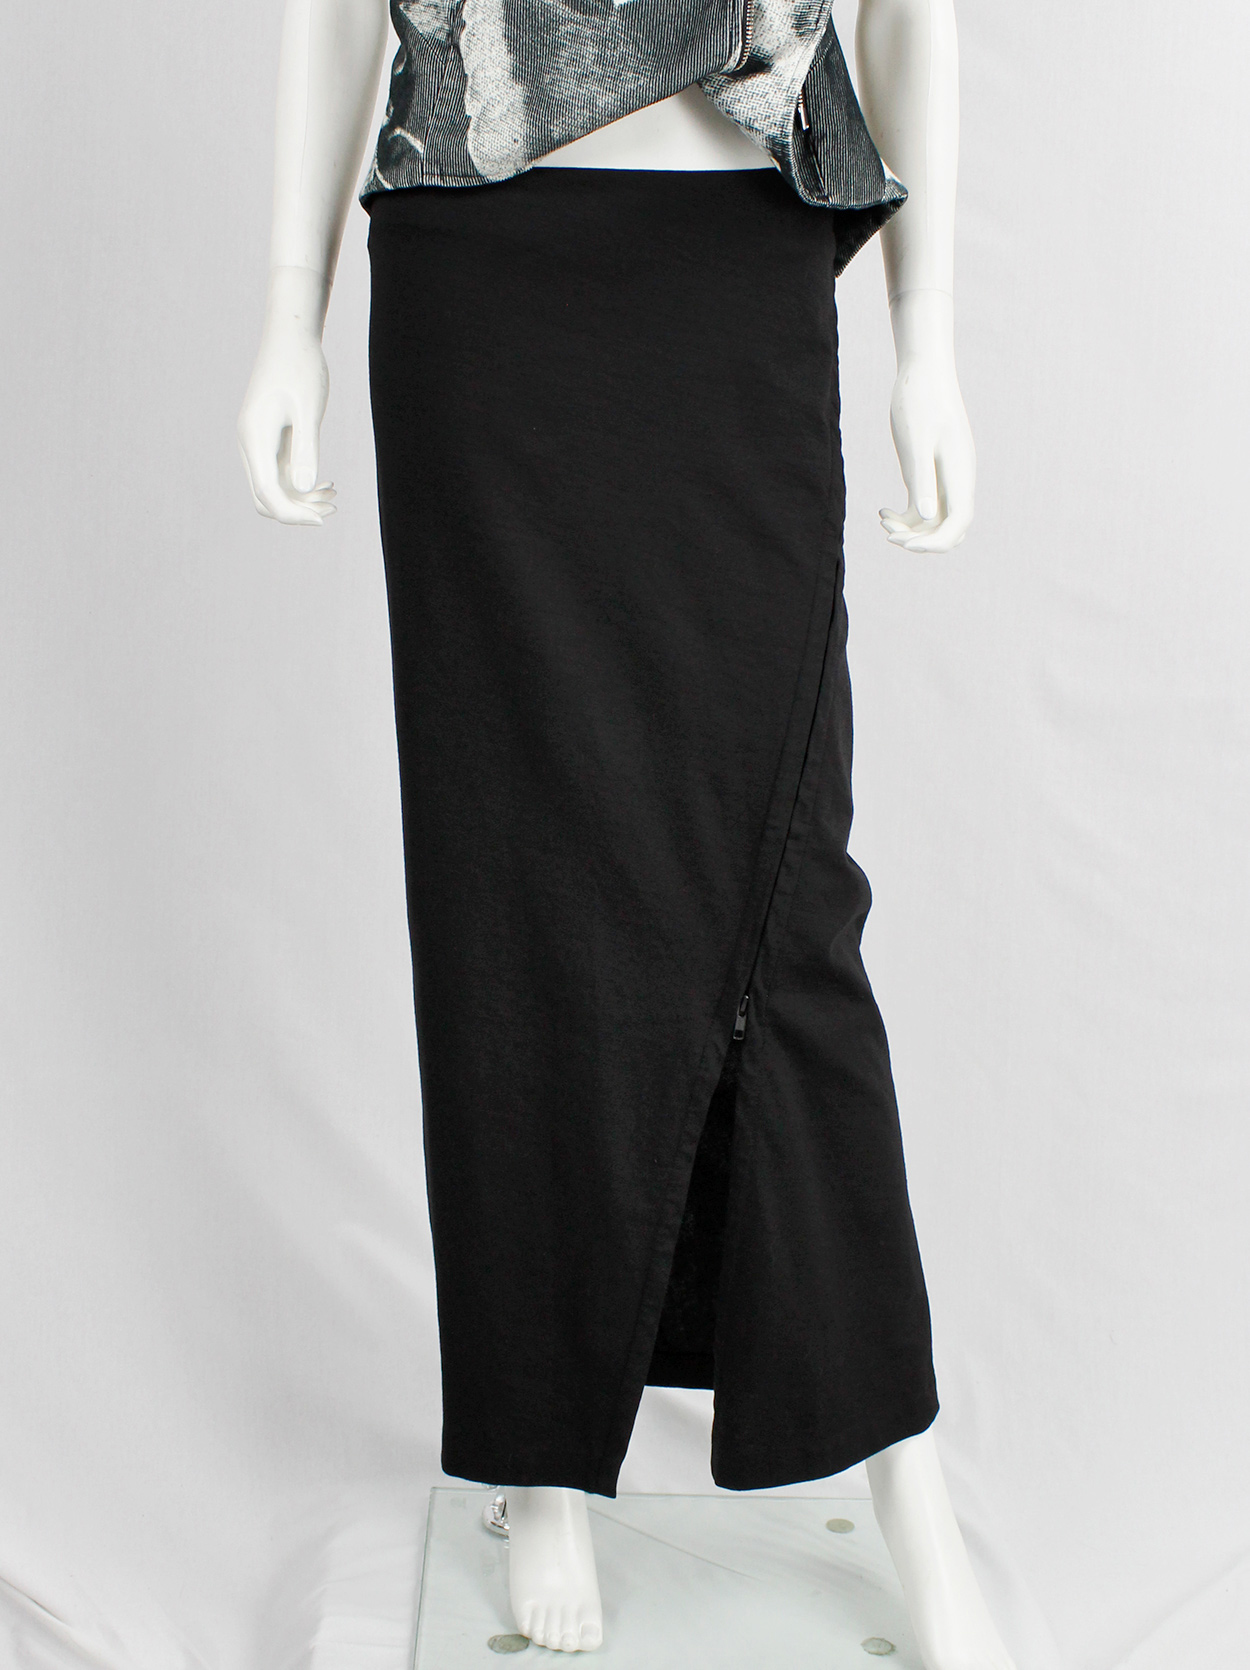 Ann Demeulemeester black maxi skirt with adjustable diagonal zipper ...